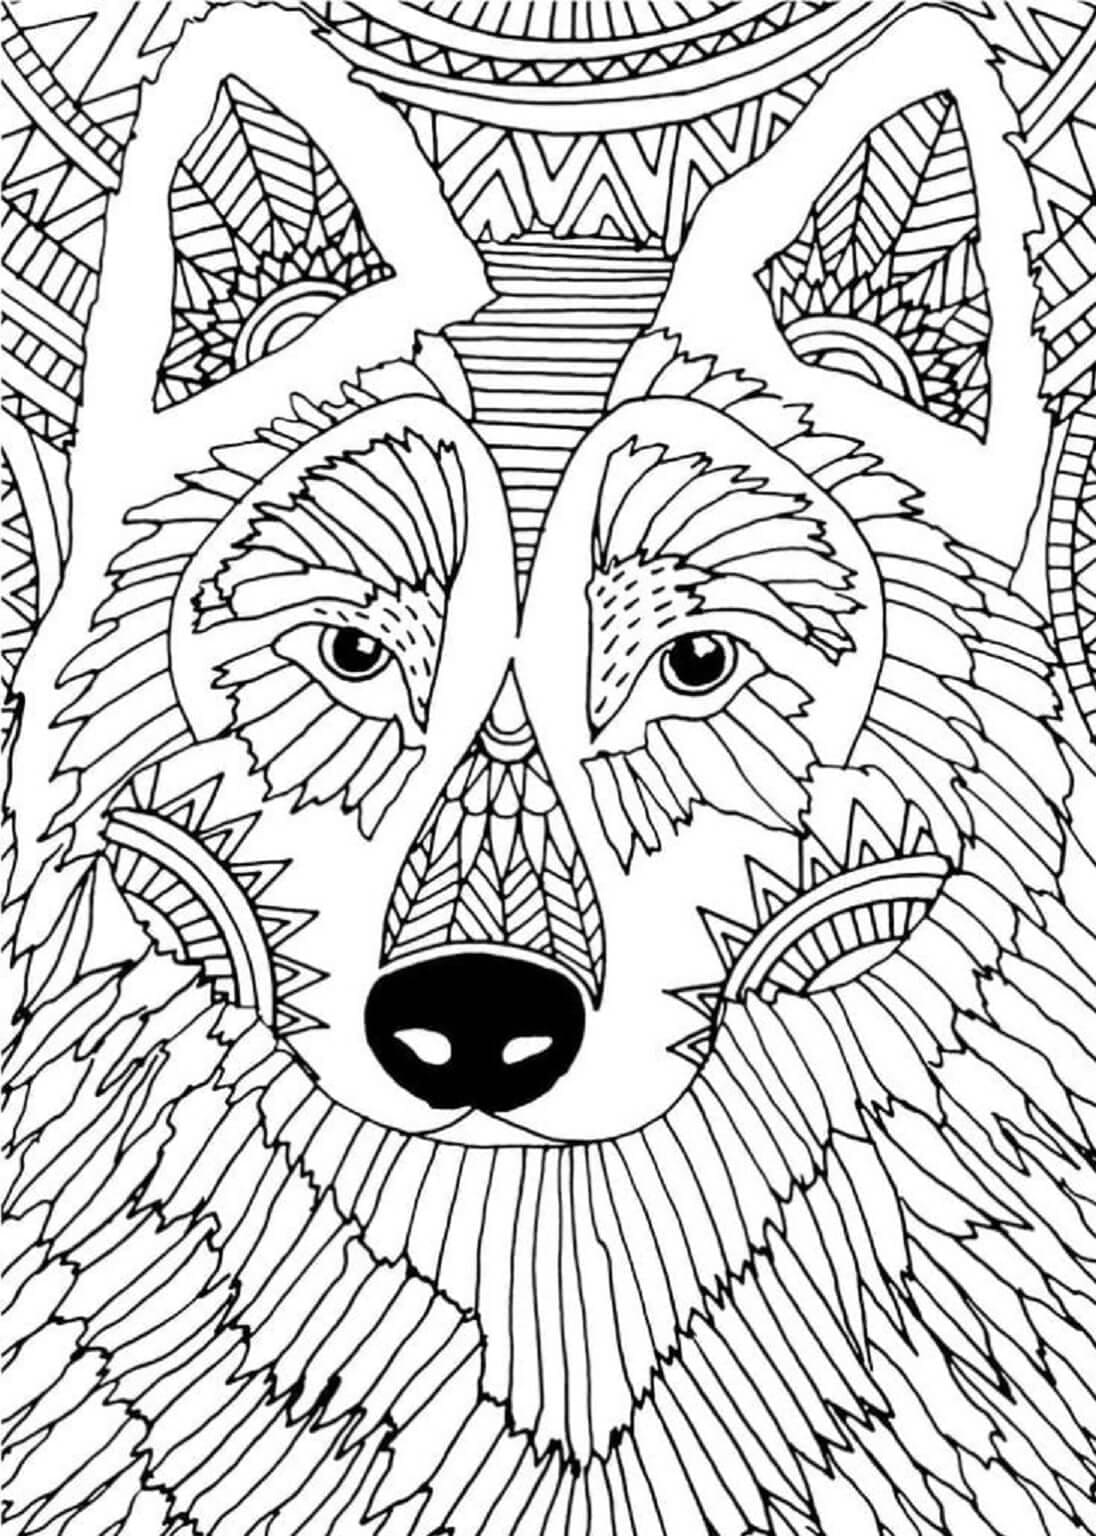 Incroyable Mandala de Loup coloring page